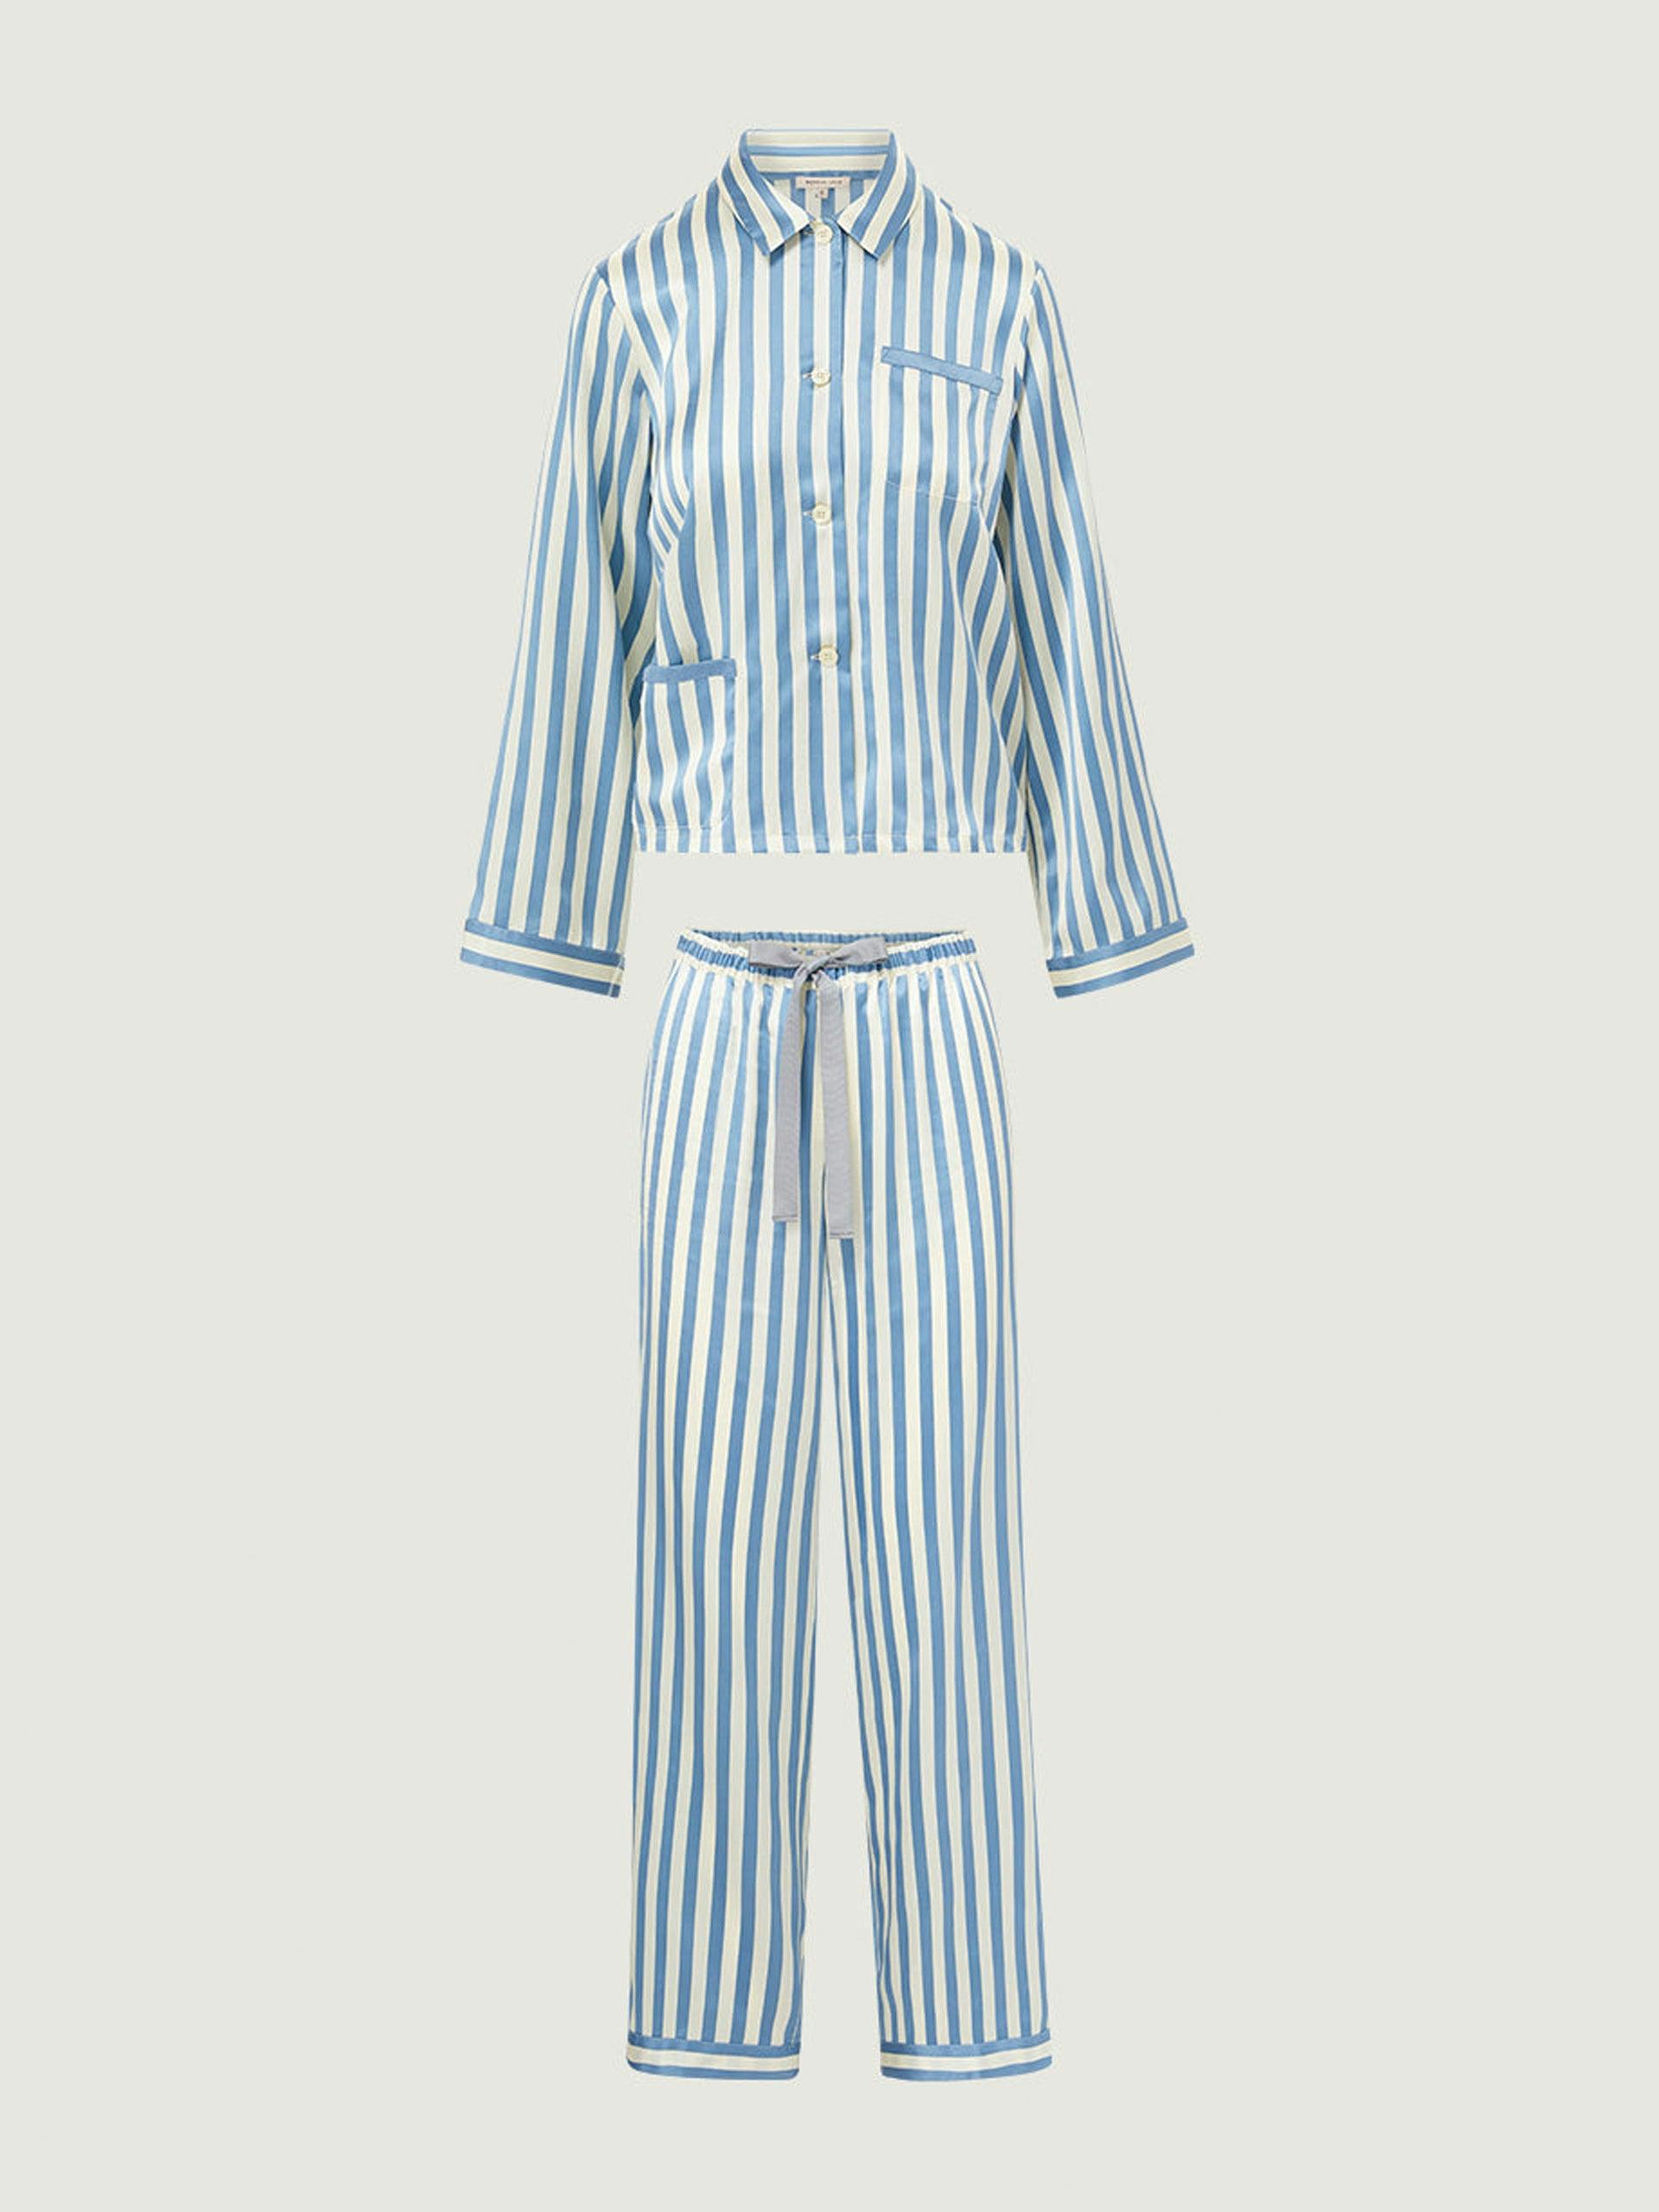 Blue and white silk pyjama set